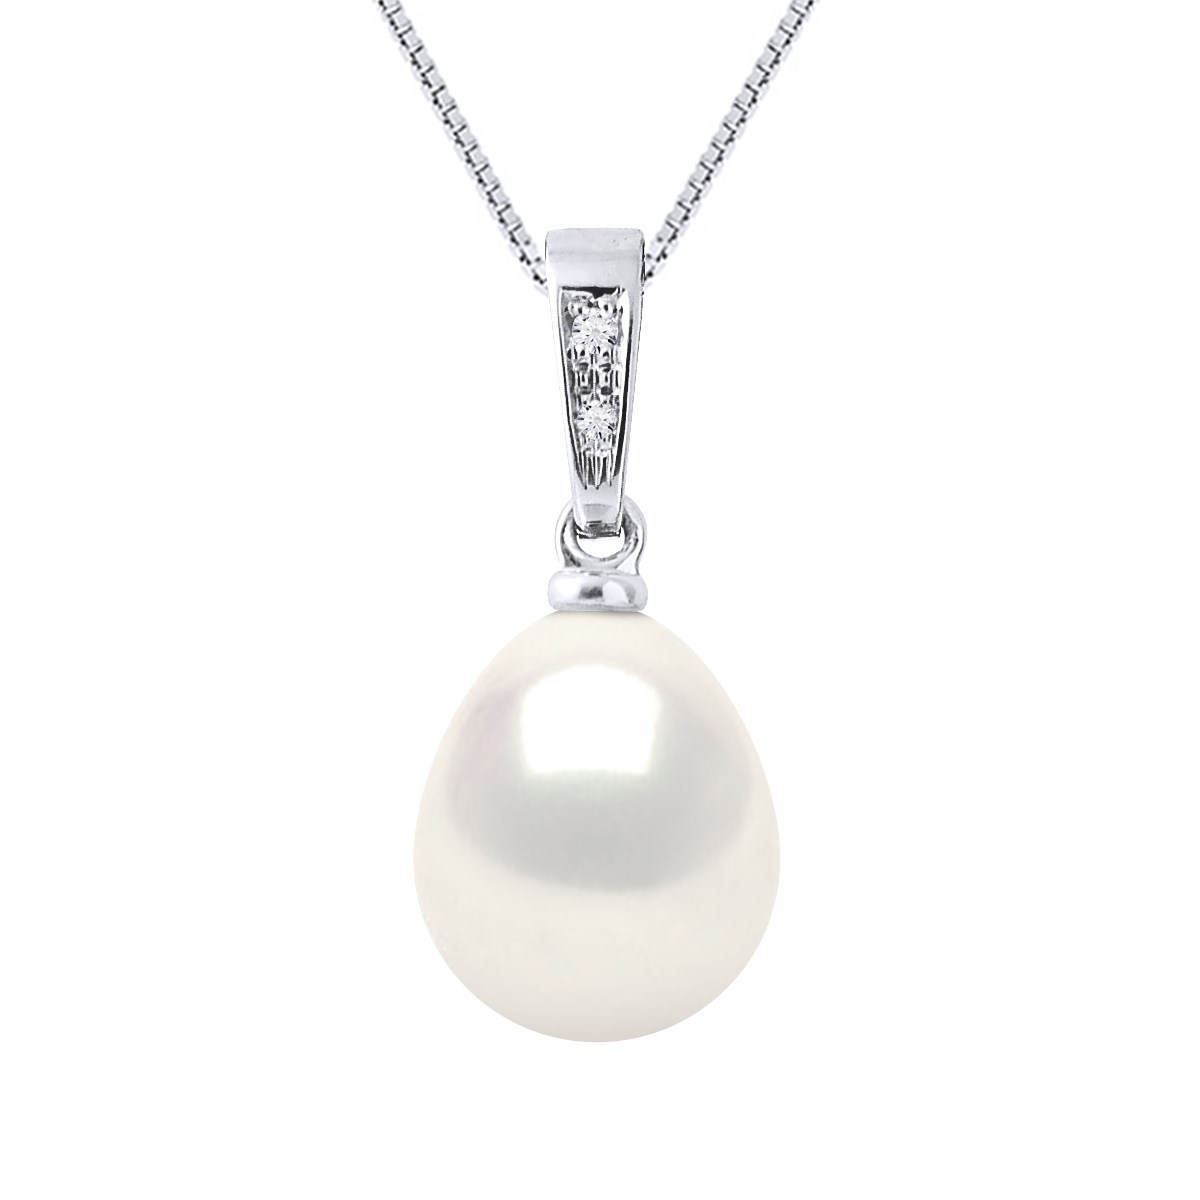 Pendentif Diamants 0,010 Cts Perle de Culture d'Eau Douce Poire 9-10 mm Blanche Or Blanc